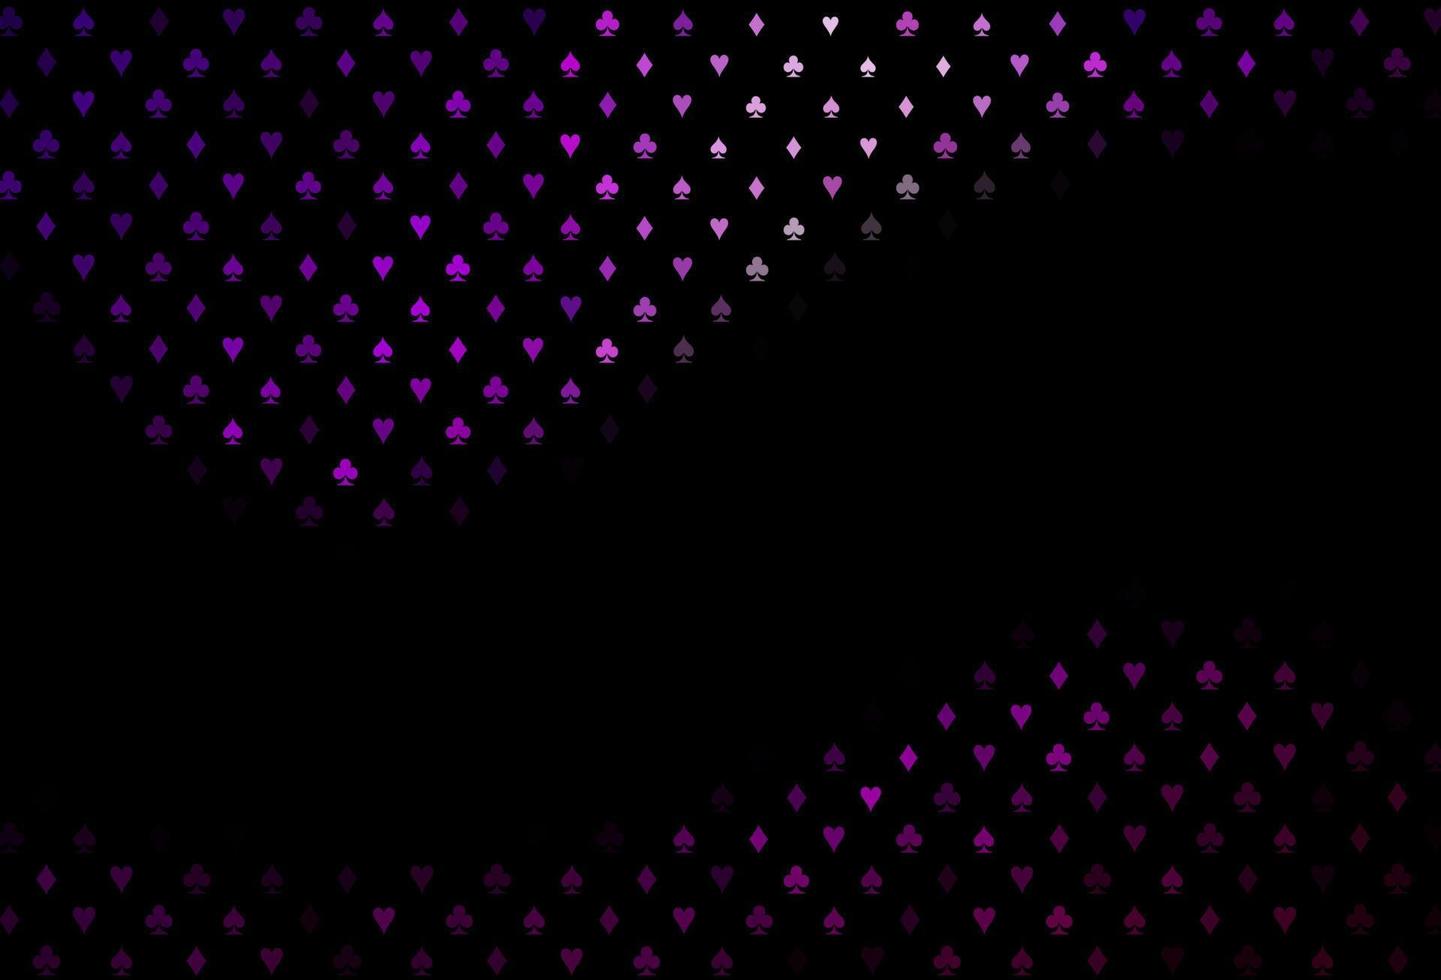 couverture vectorielle violet foncé avec des symboles de pari. vecteur